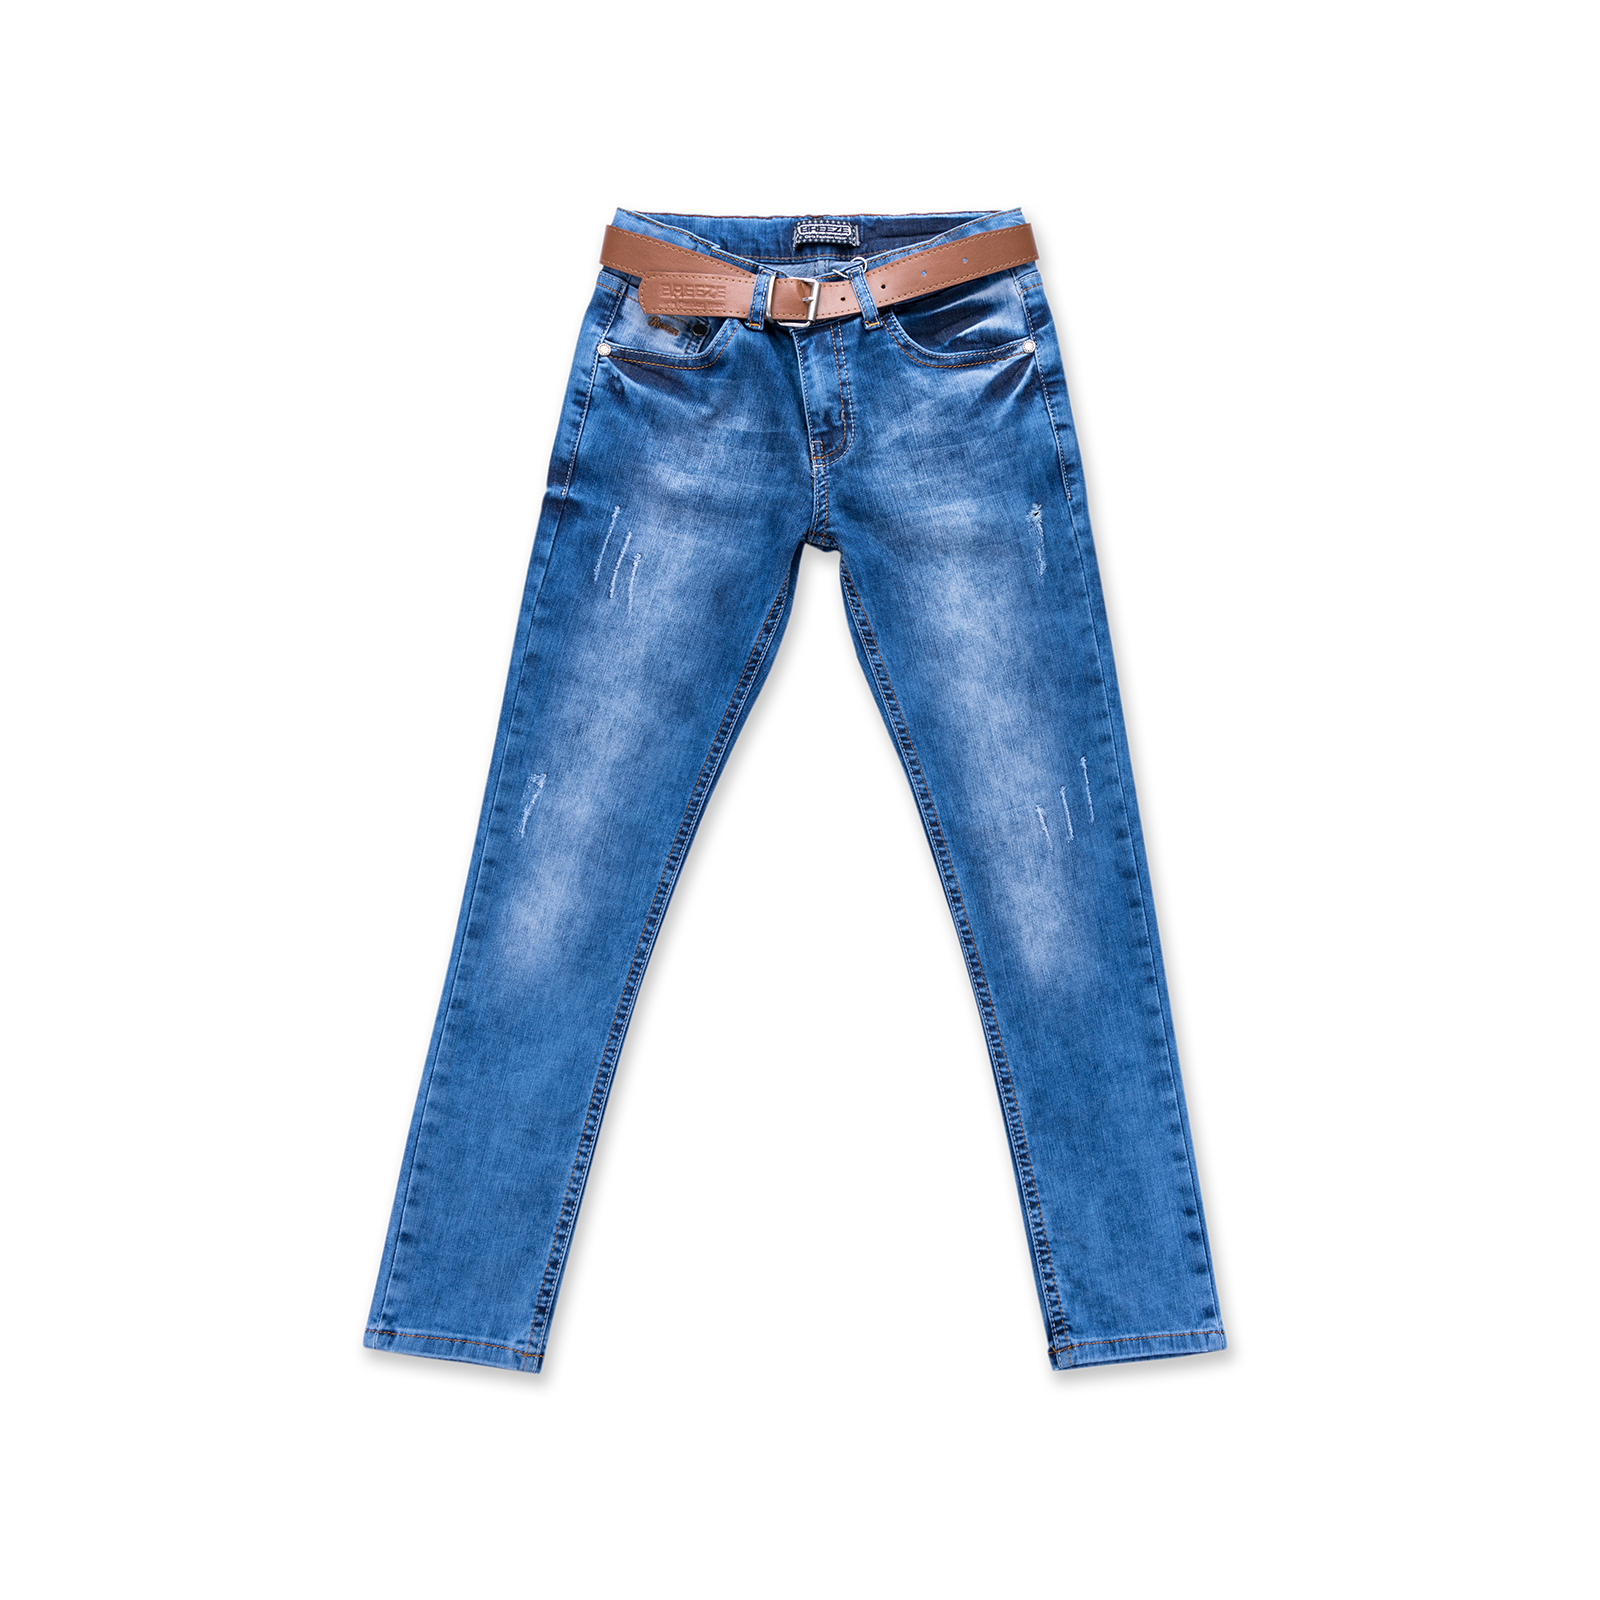 Джинсы Breeze с ремнем (20058-128G-jeans)